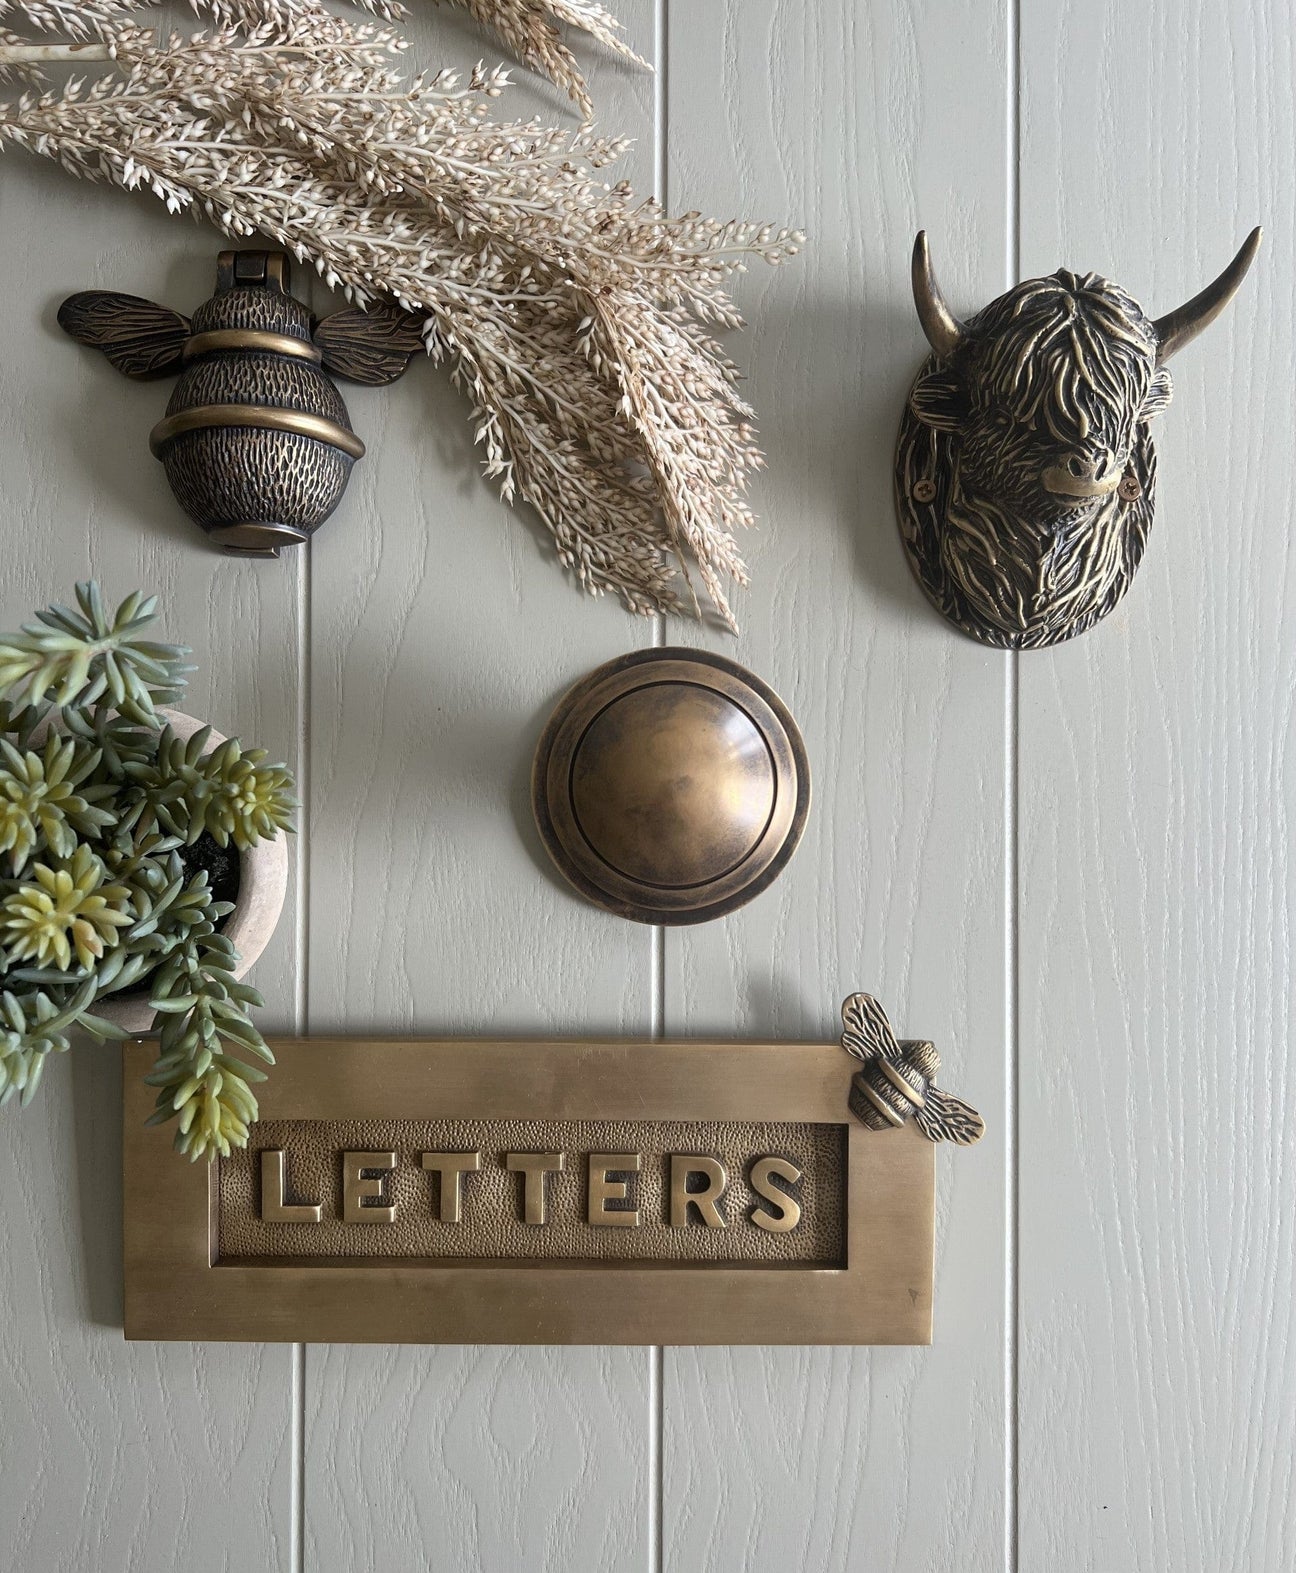 Brass bee door knocker and letter plate